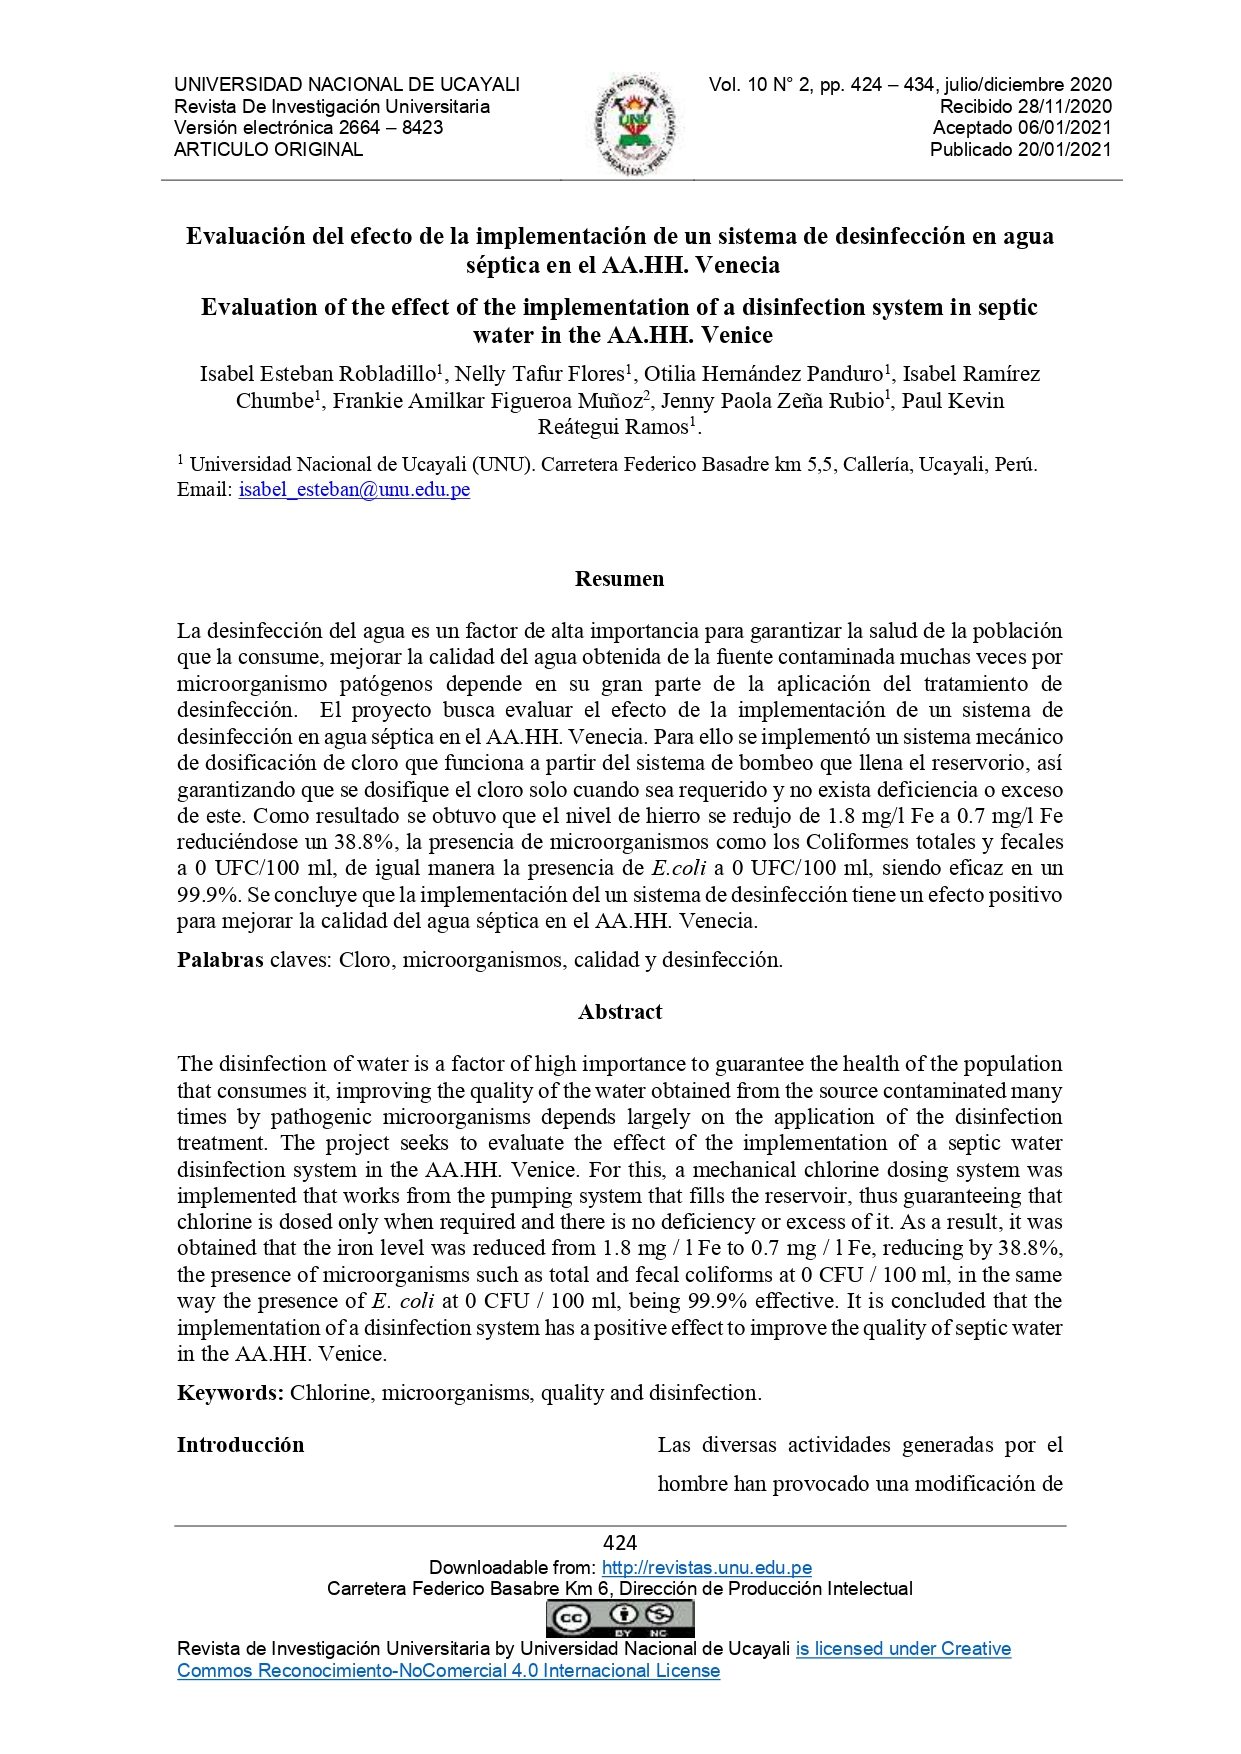 Evaluación del efecto de la implementación de un sistema de desinfección en agua séptica en el AA.HH. Venecia